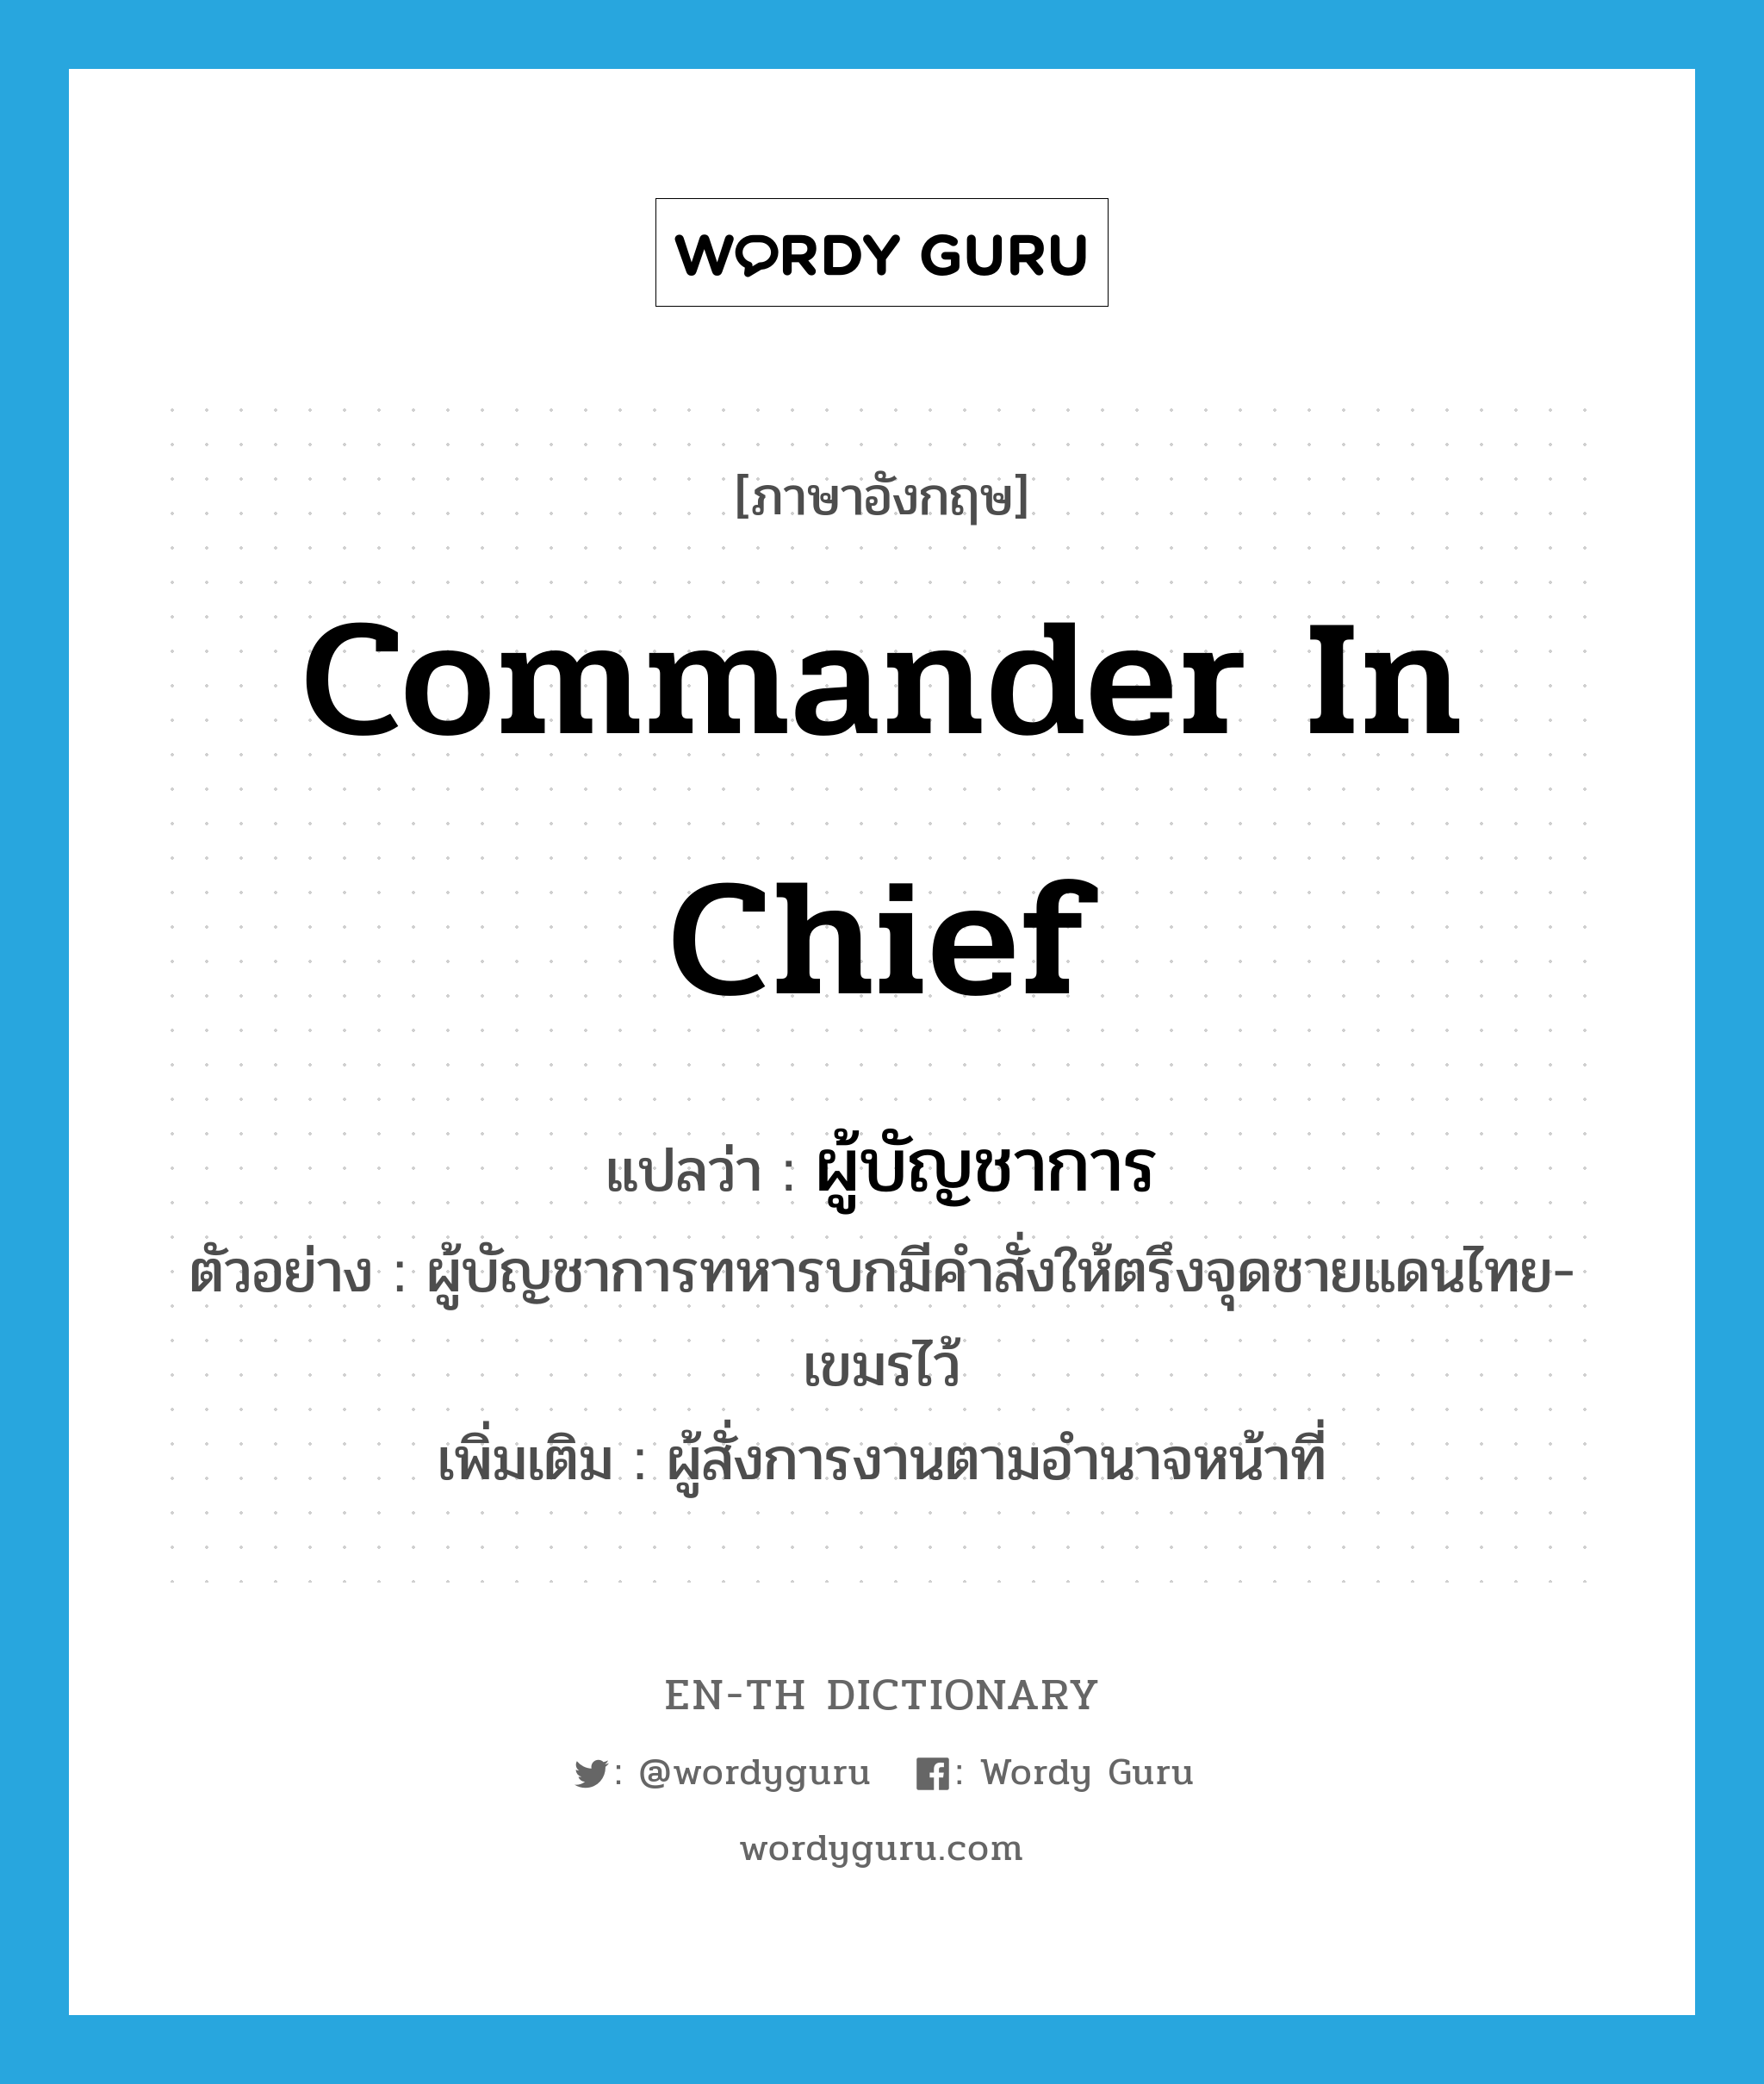 ผู้บัญชาการ ภาษาอังกฤษ?, คำศัพท์ภาษาอังกฤษ ผู้บัญชาการ แปลว่า commander in chief ประเภท N ตัวอย่าง ผู้บัญชาการทหารบกมีคำสั่งให้ตรึงจุดชายแดนไทย-เขมรไว้ เพิ่มเติม ผู้สั่งการงานตามอำนาจหน้าที่ หมวด N